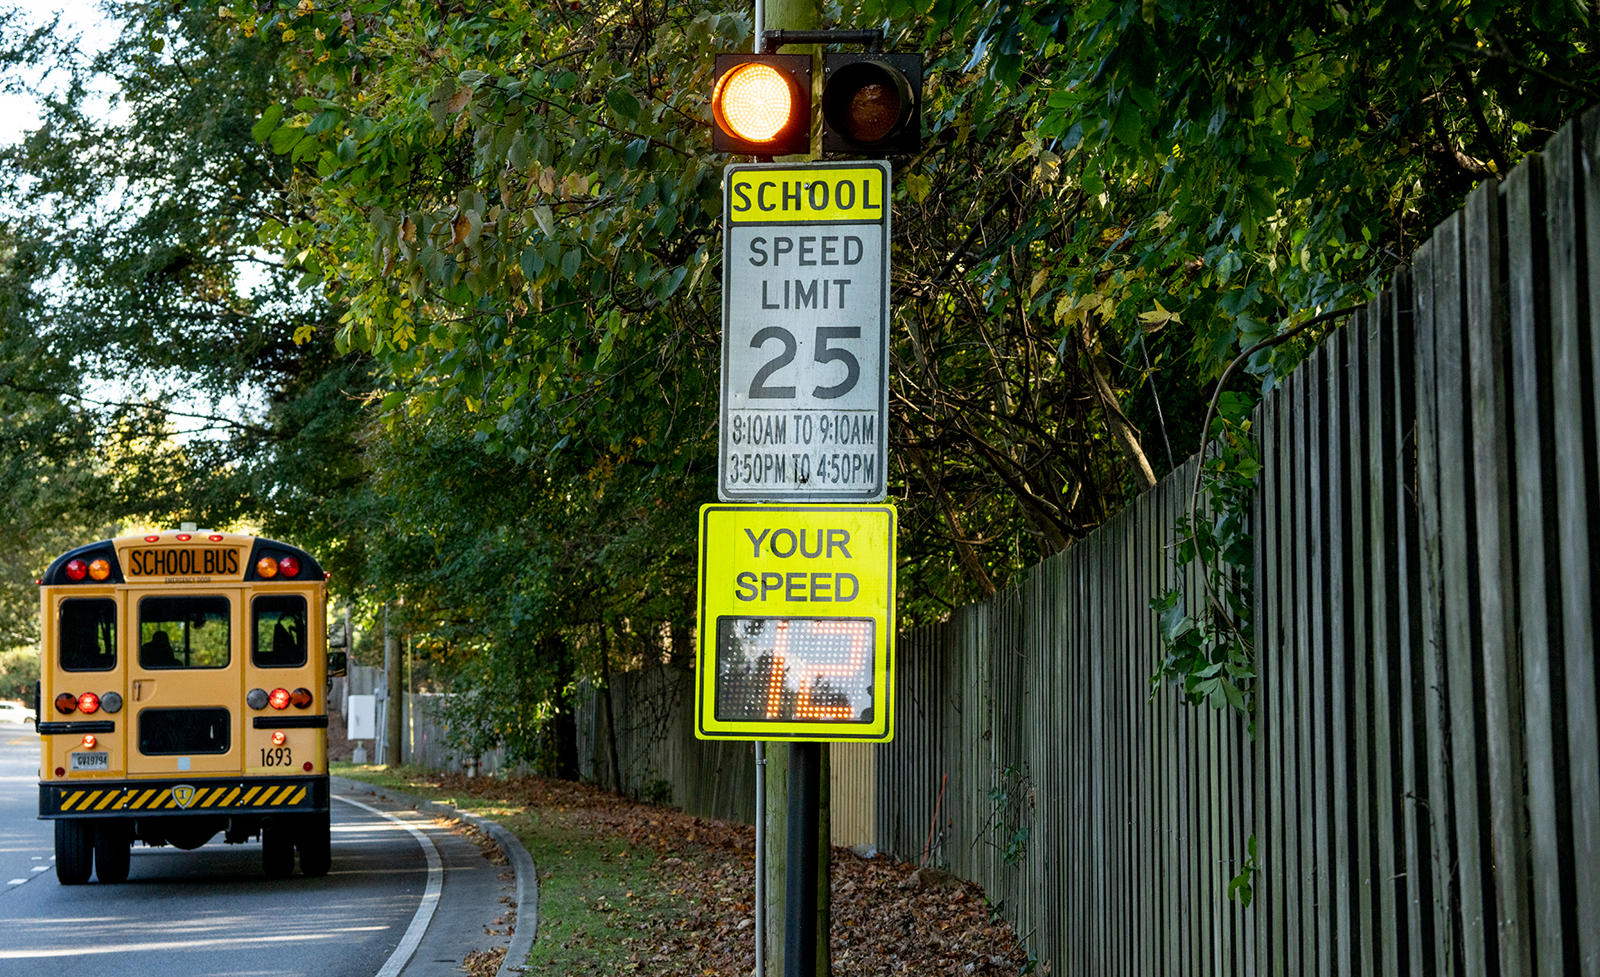 В школьных зонах уже есть придорожные блоки (RSU), которые используют мигающие огни, чтобы предупреждать водителей о снижении скорости. Эти RSU получат технологию C-V2X, чтобы они могли связываться с транспортными средствами. В качестве дополнительно